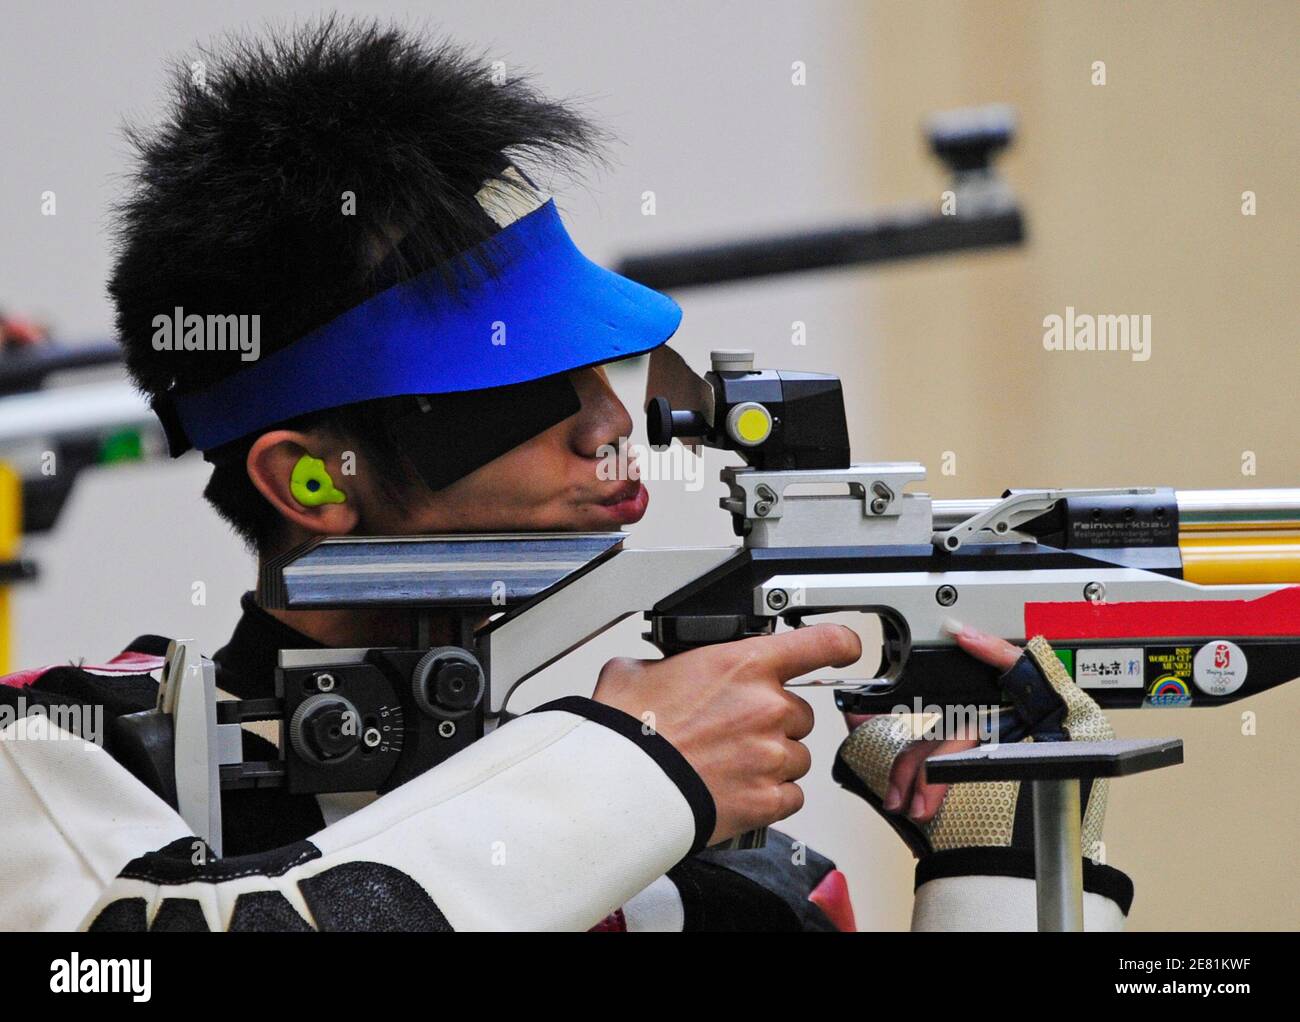 Silbermedaillengewinner Zhu Qinan China schießt im Finale der Herren 10m Luftgewehr Wettbewerb bei der Beijing 2008 Olympischen Spiele August 11, 2008.     REUTERS/Desmond Boylan (CHINA) Stockfoto